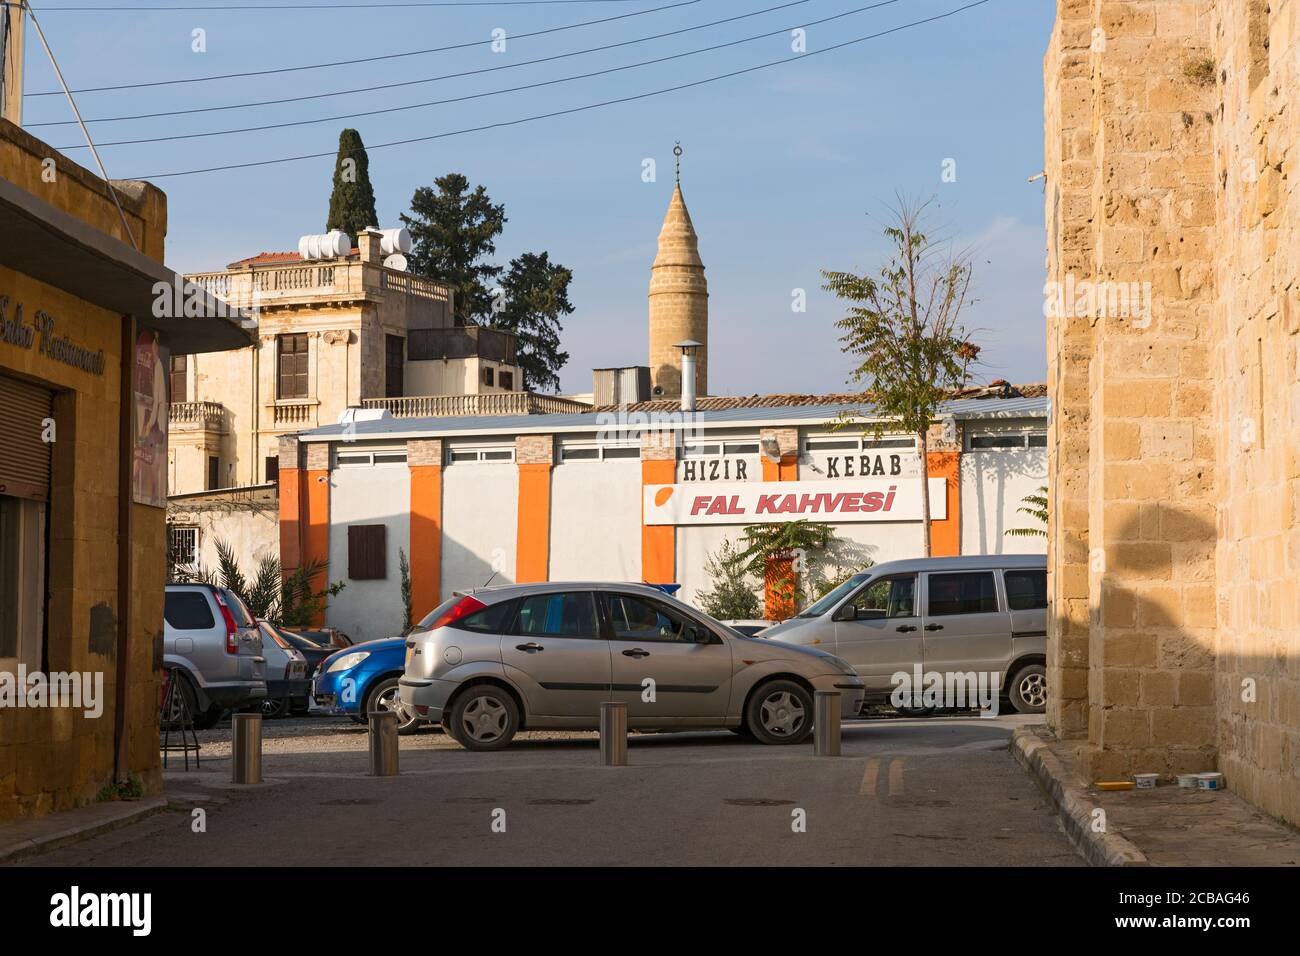 Nikosia, Strasse, Gebäude, Minarett, griechischer Teil Foto Stock